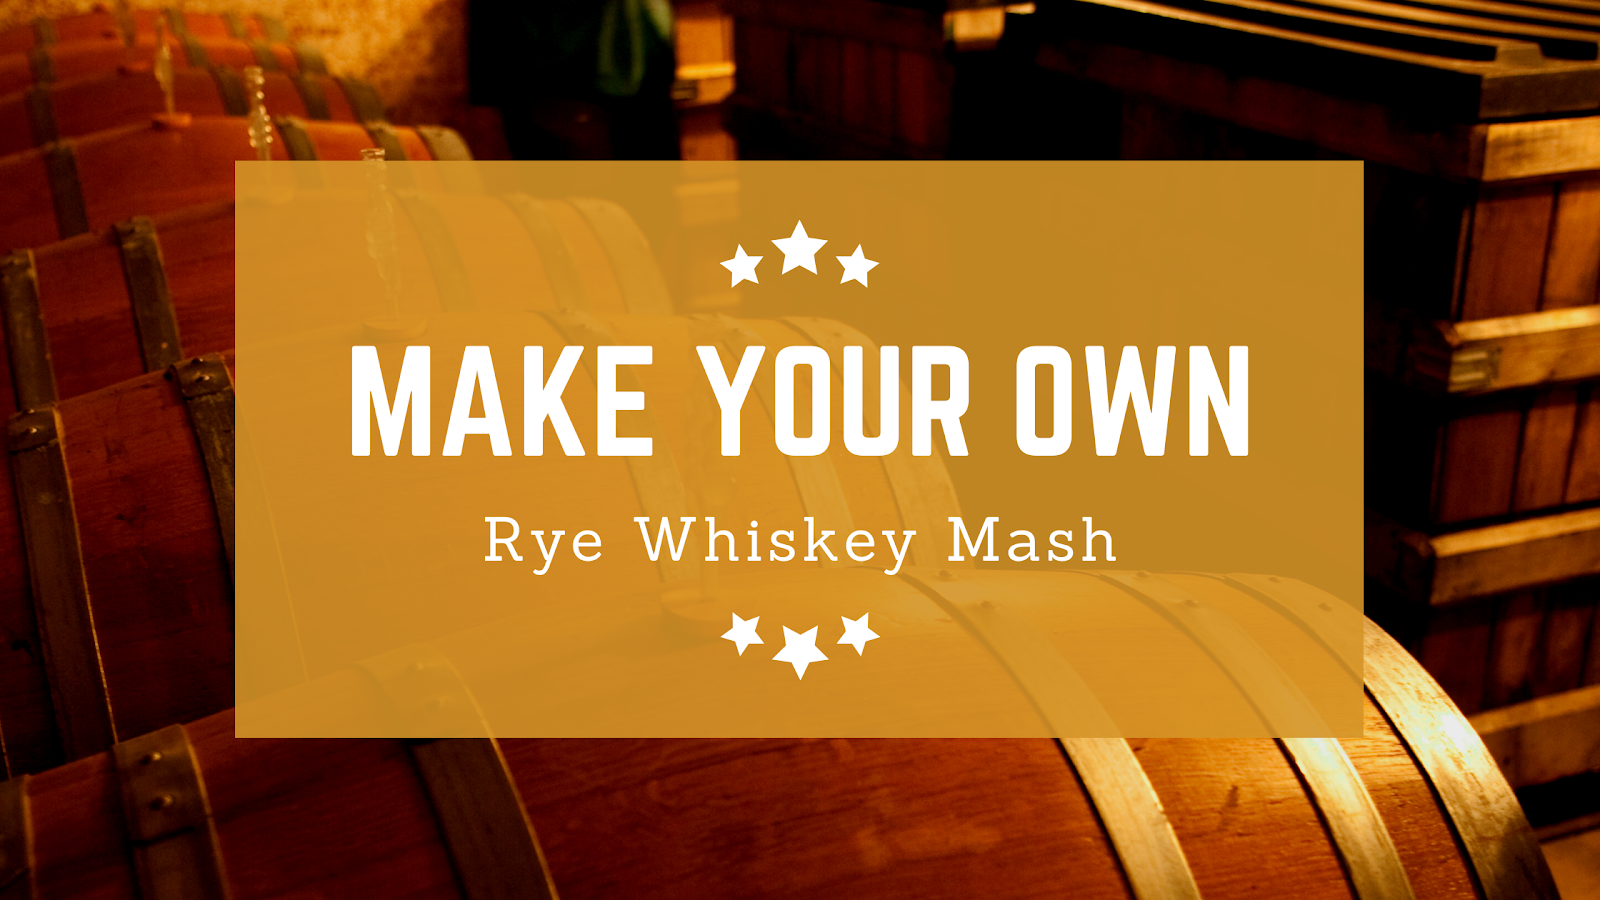 Rye Whiskey Mash Moonshine Recipe